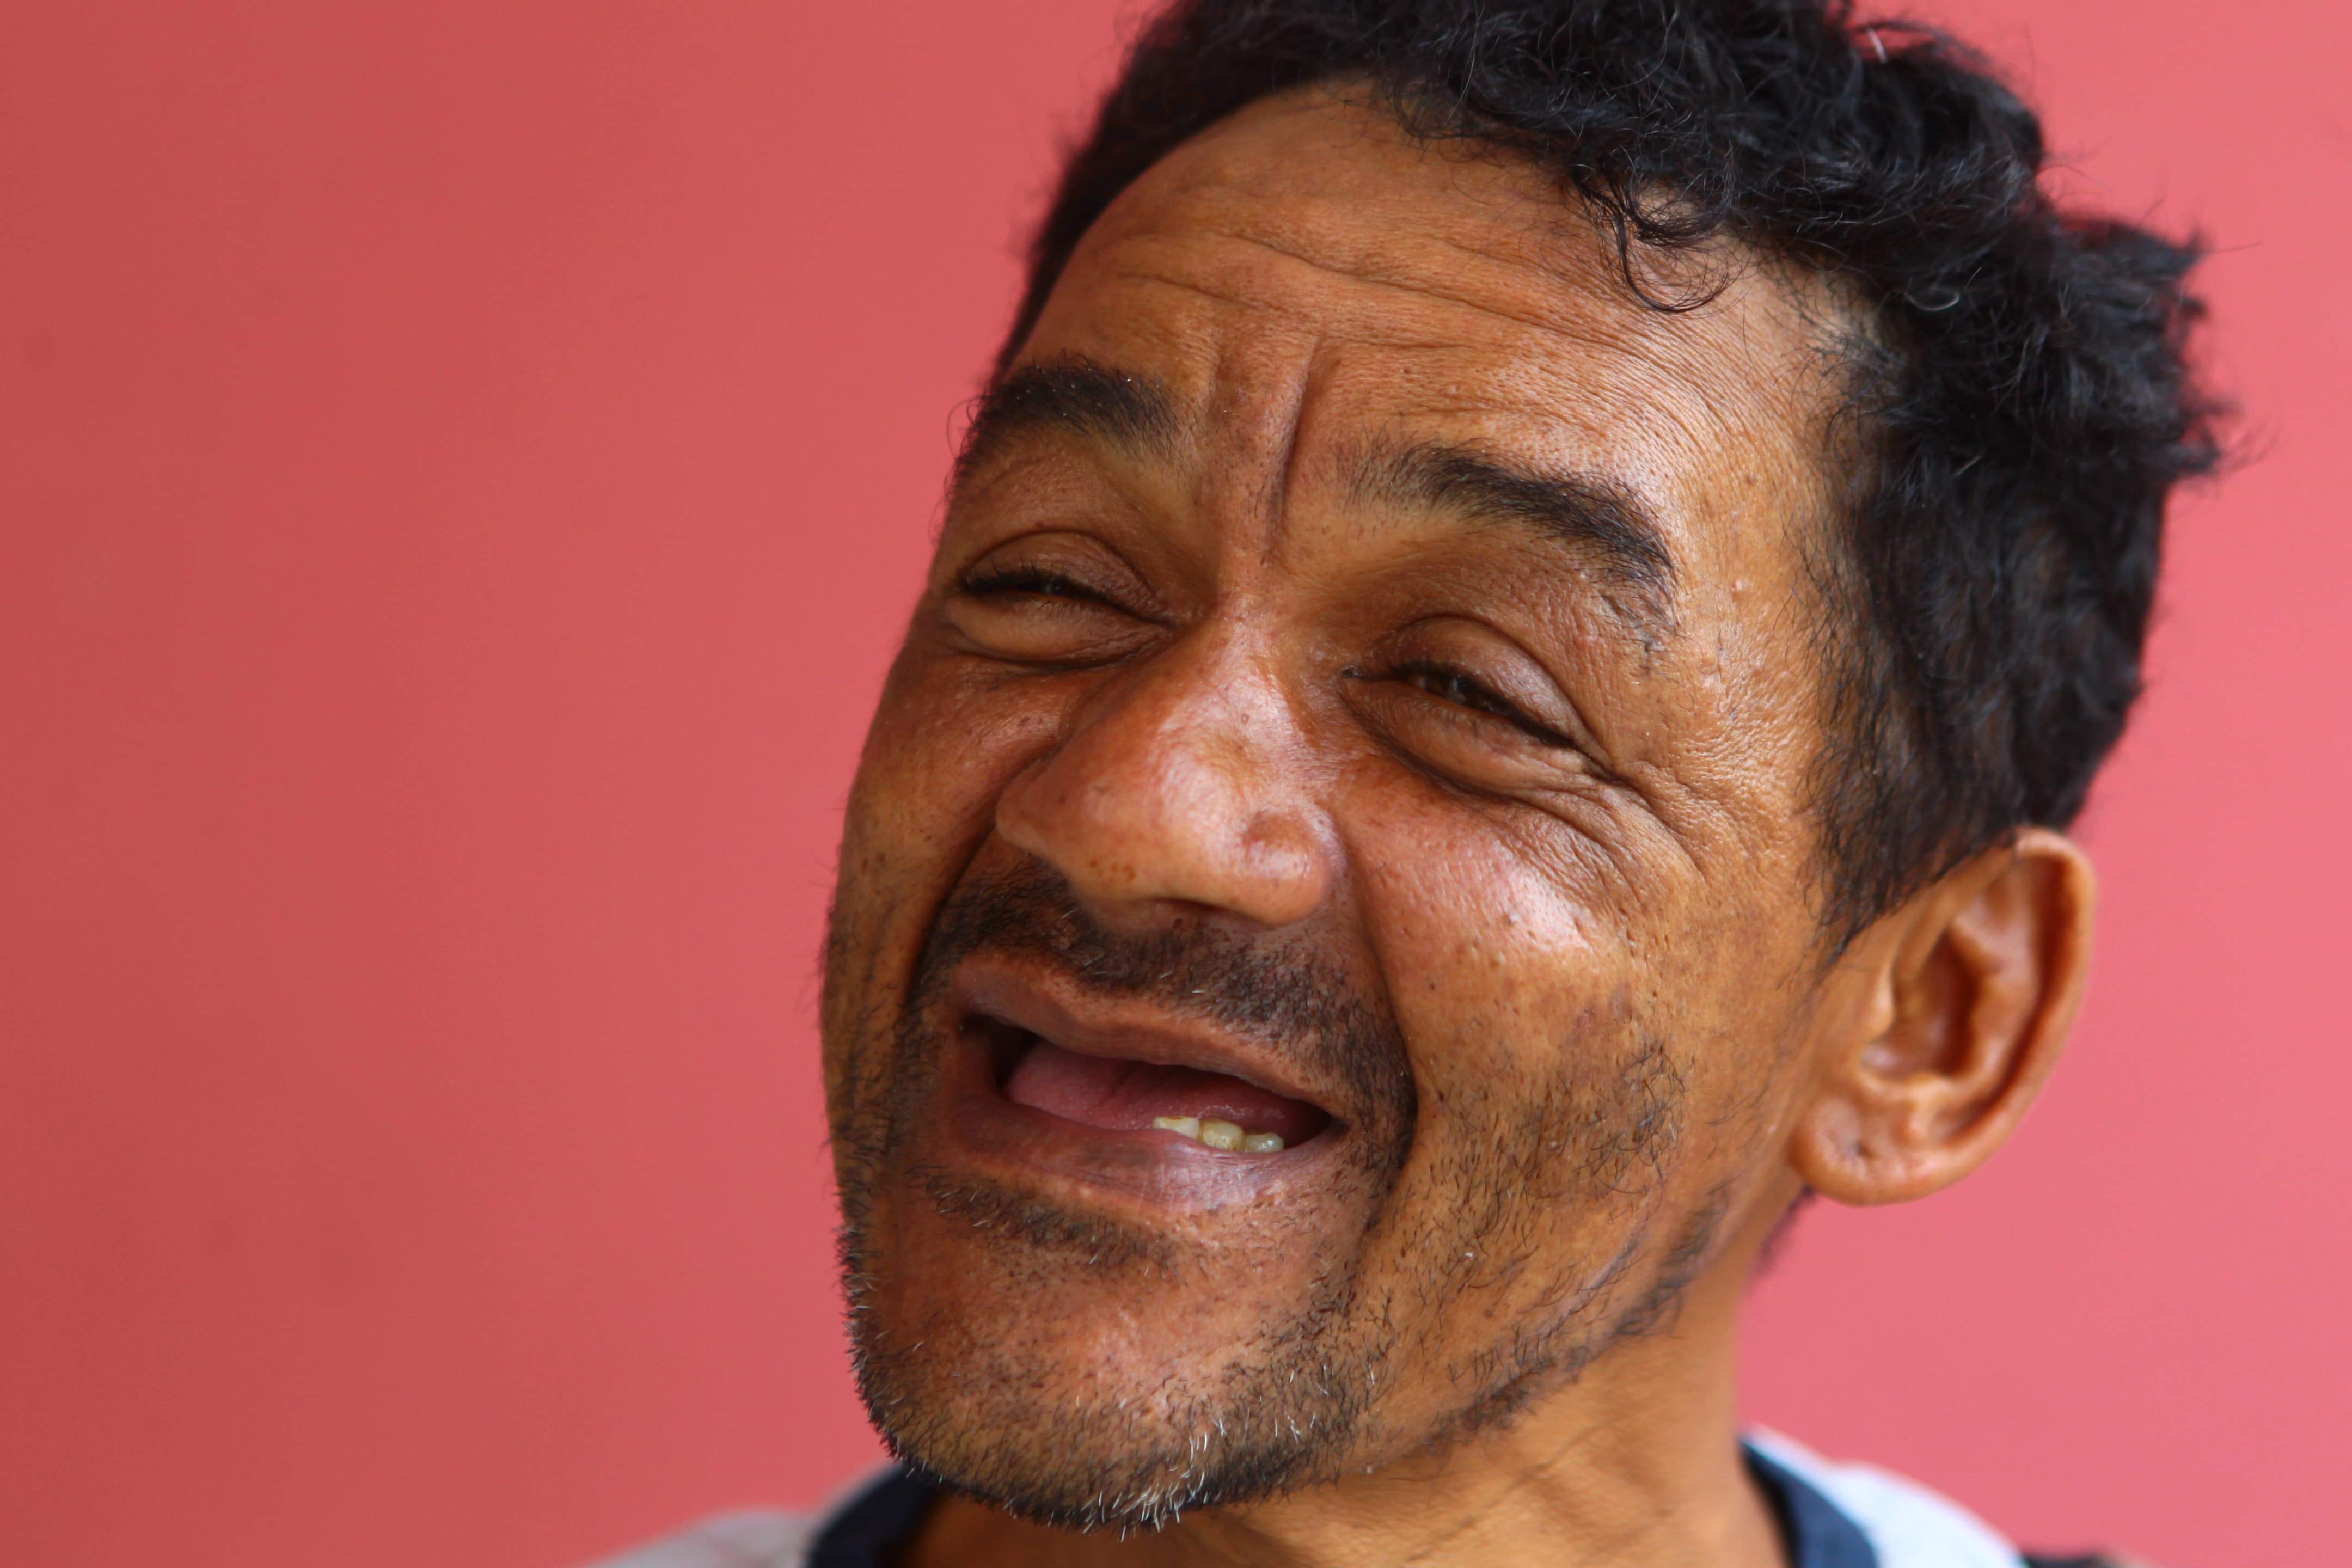 Luiz vive nas ruas de Santos e vende balas para sobreviver